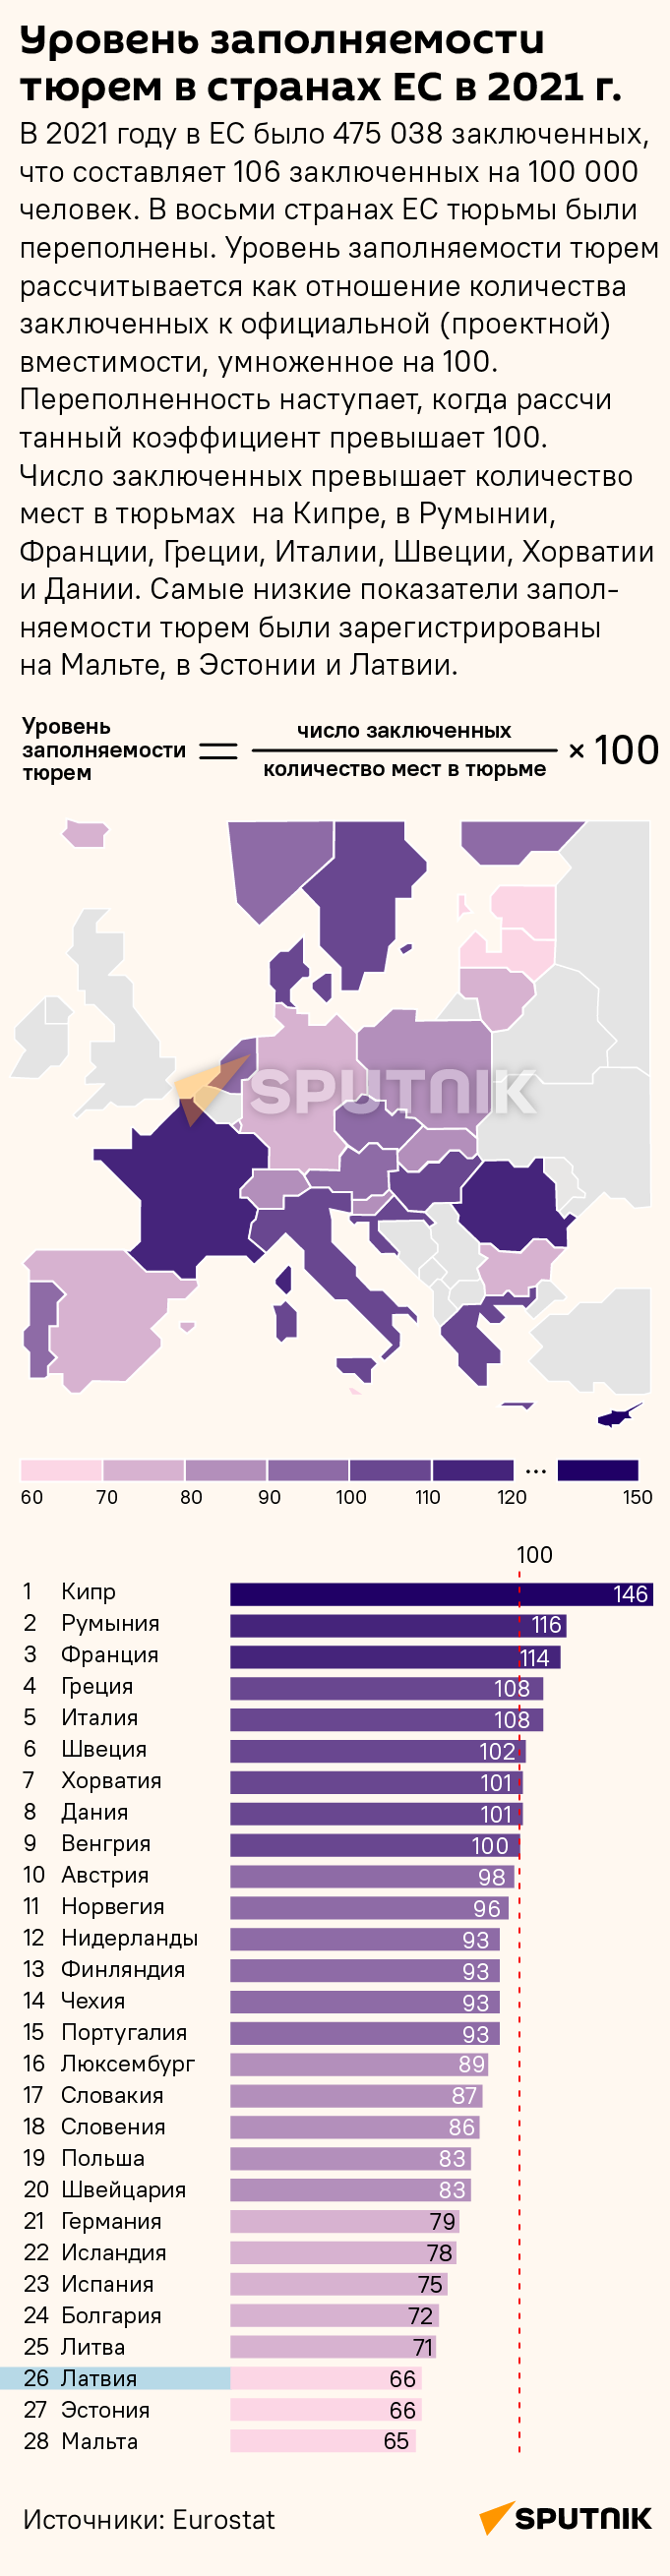 Уровень заполняемости тюрем в странах ЕС в 2021 г. - Sputnik Латвия